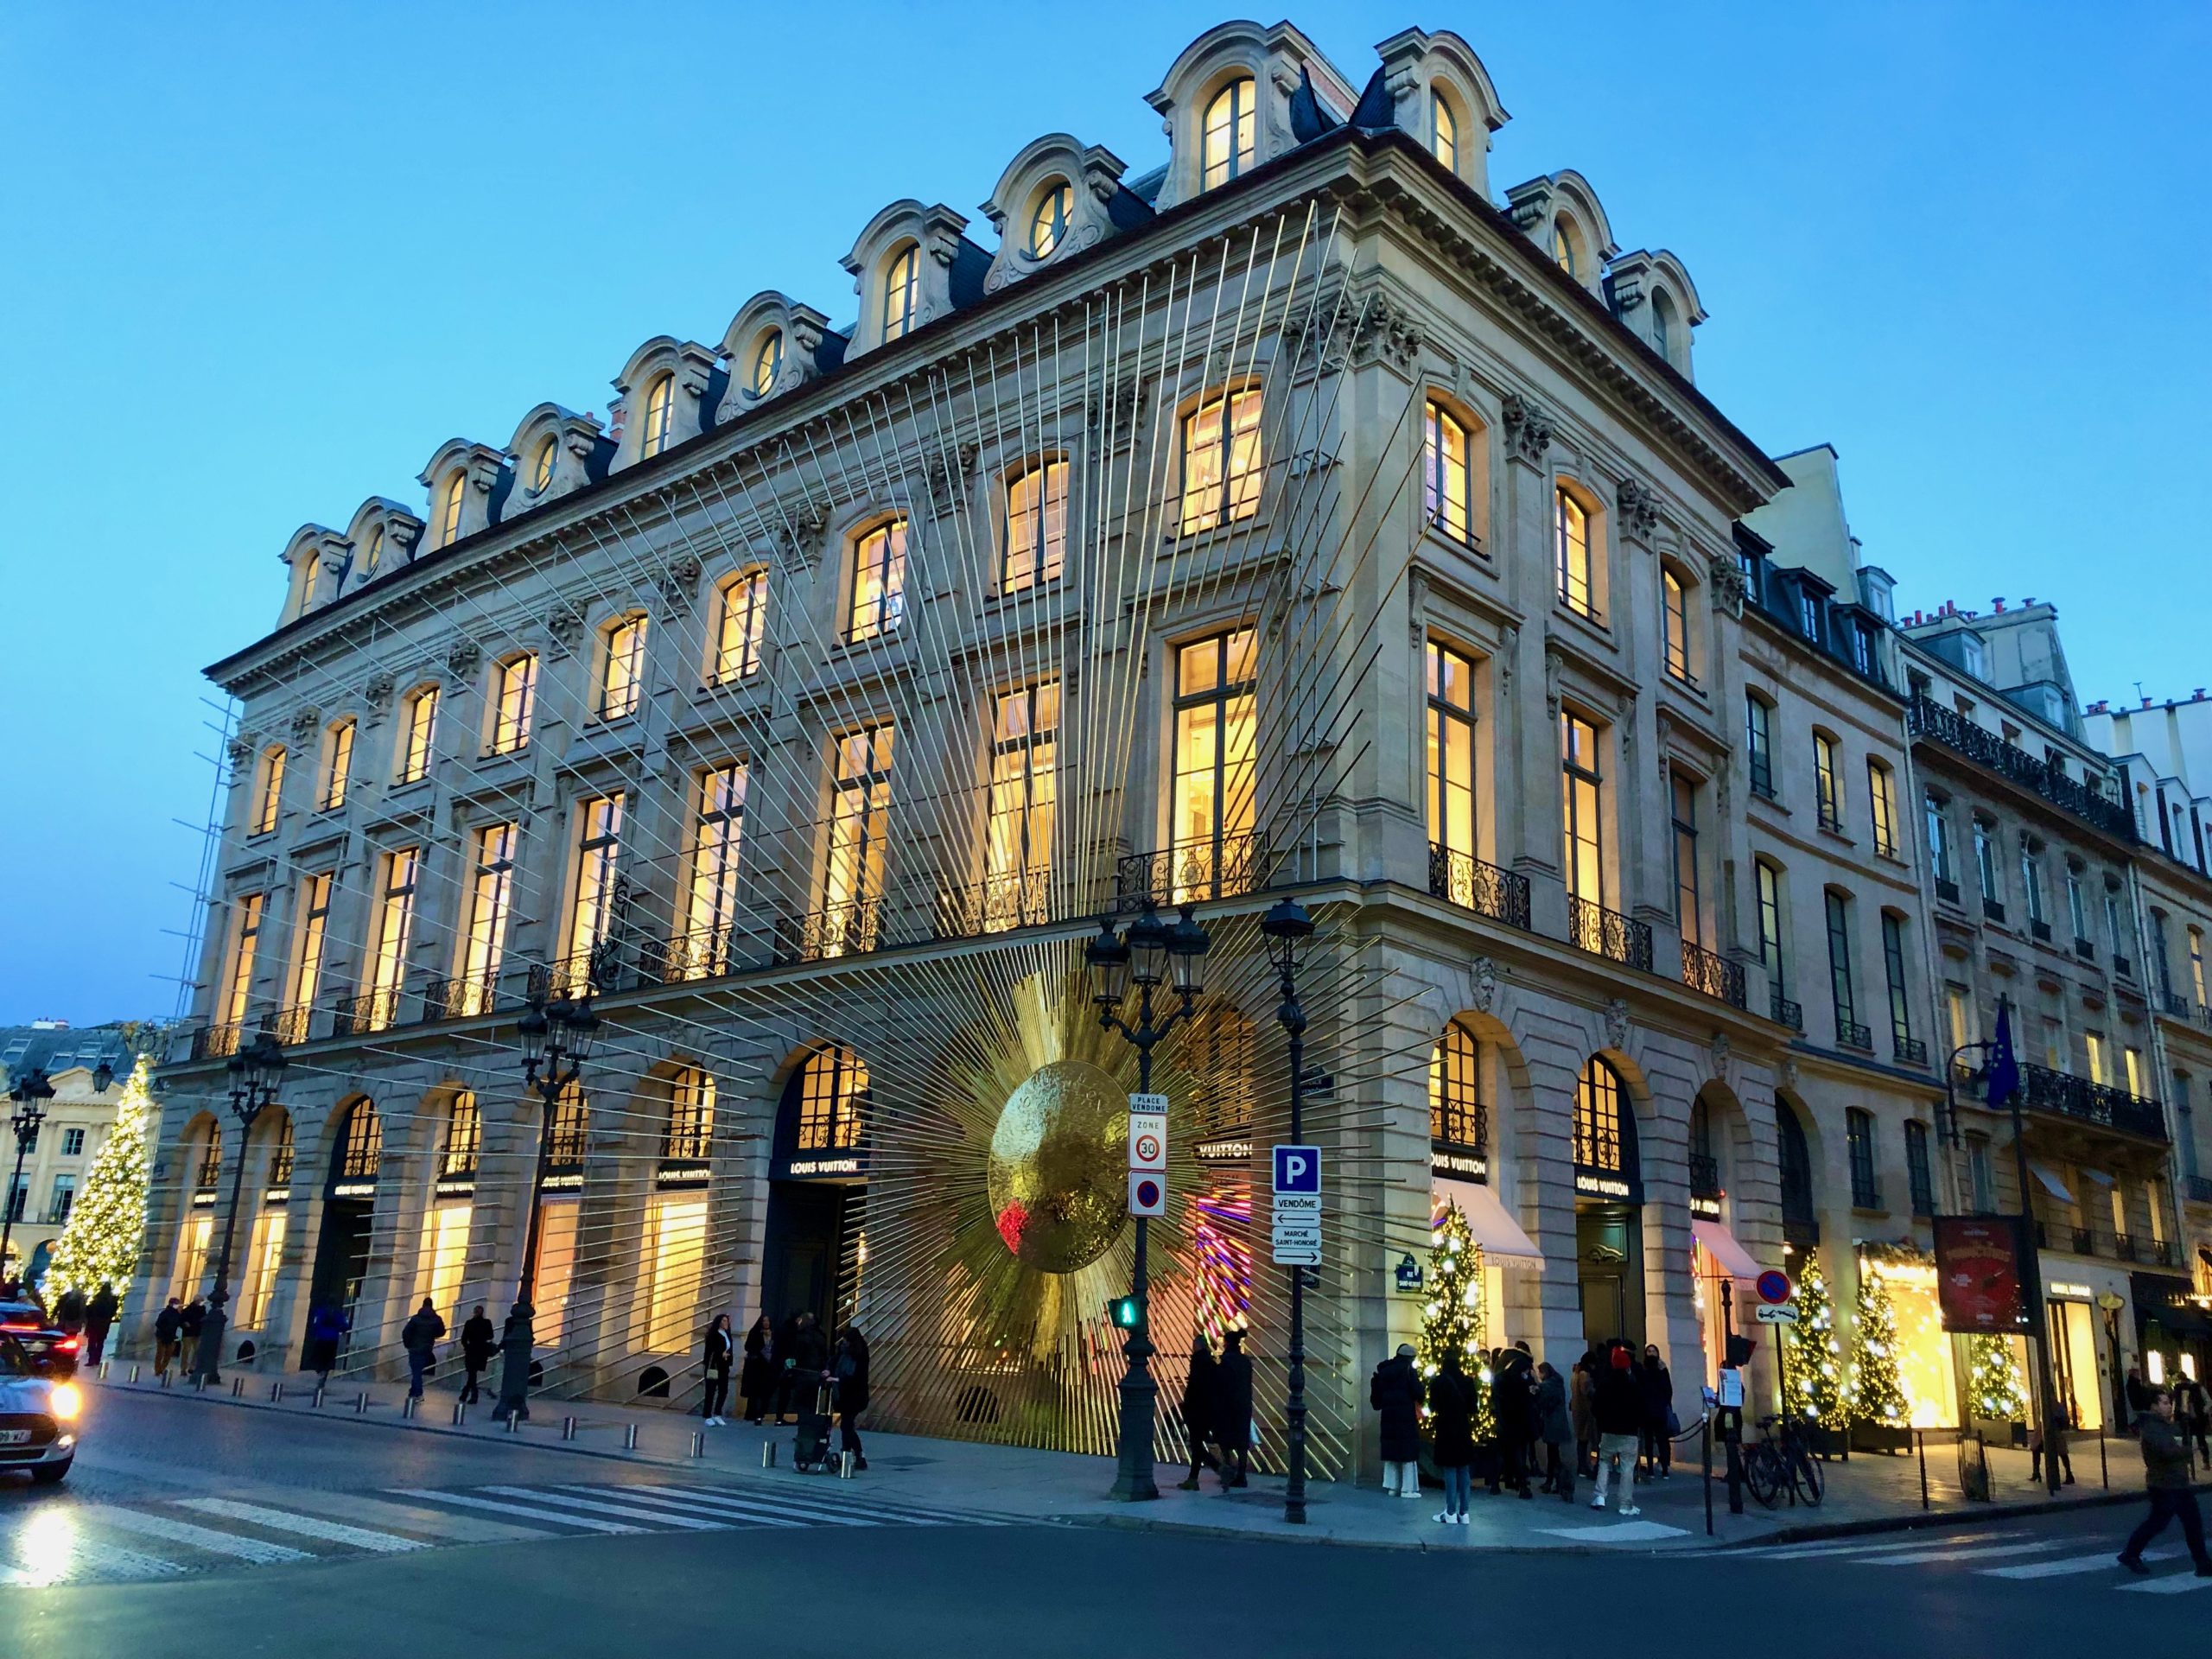 Louis Vuitton: A sparkling arrival in Place Vendome